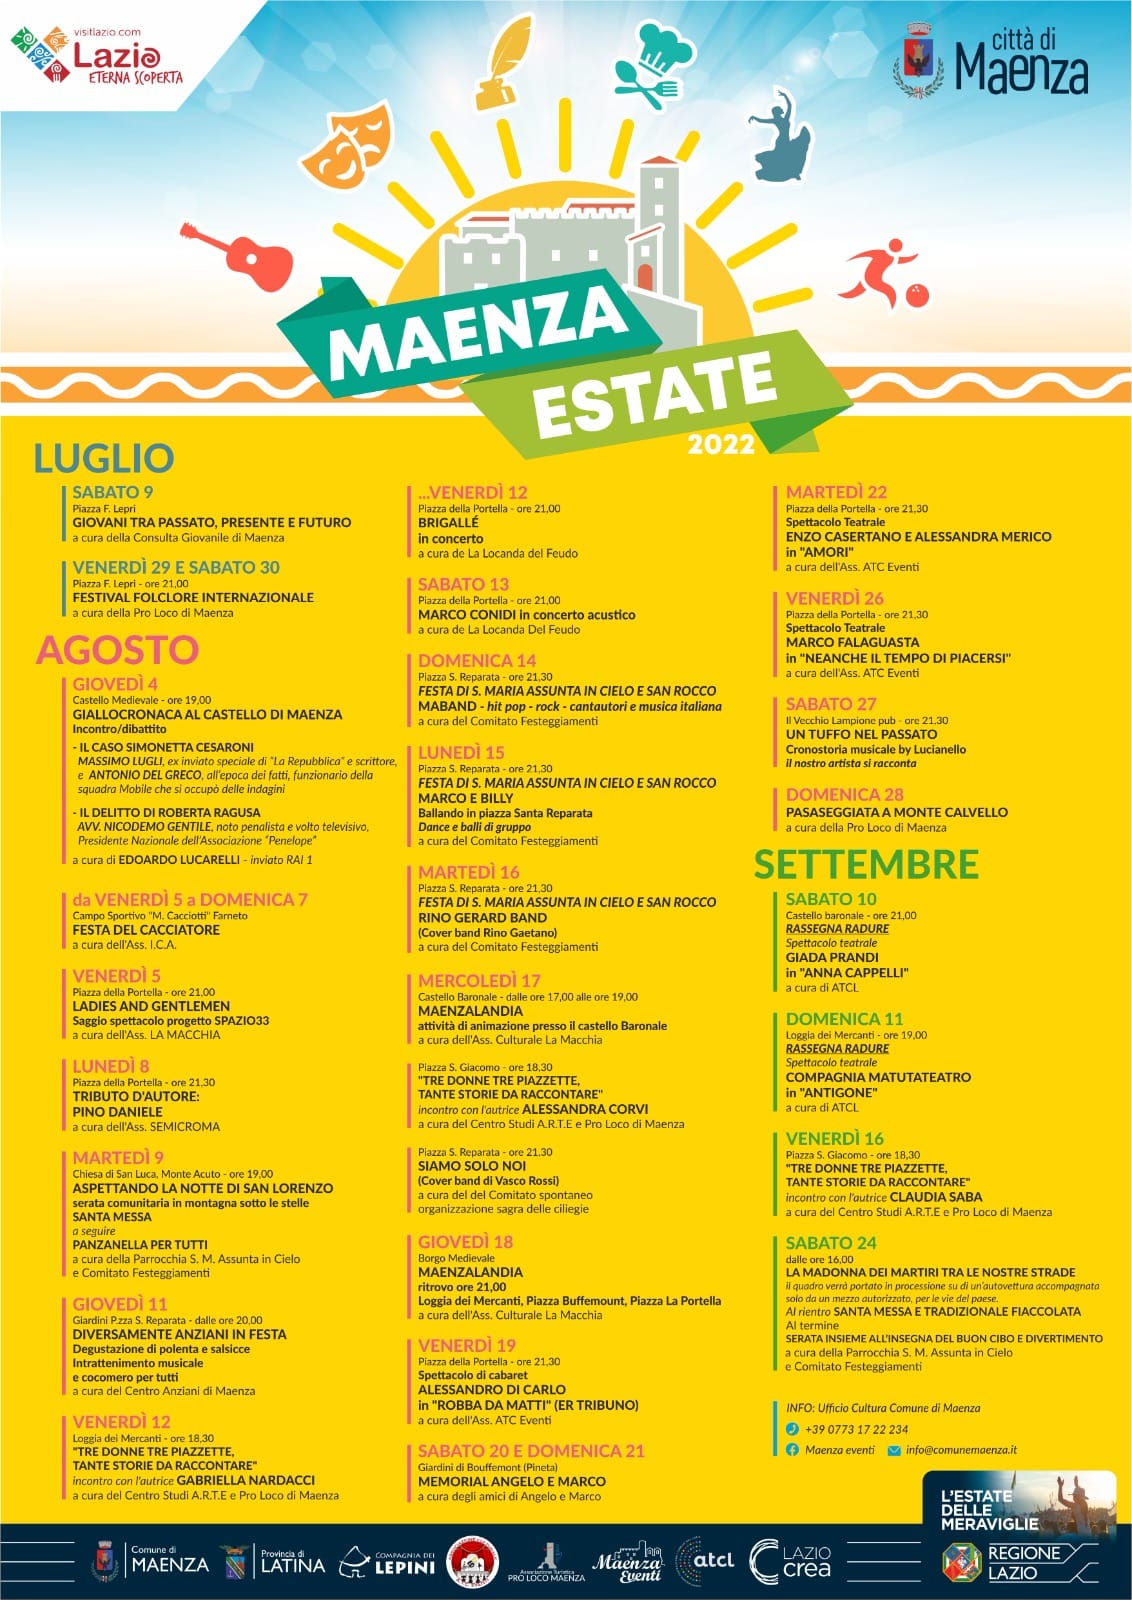 Maenza: Estate 2022 @ Maenza